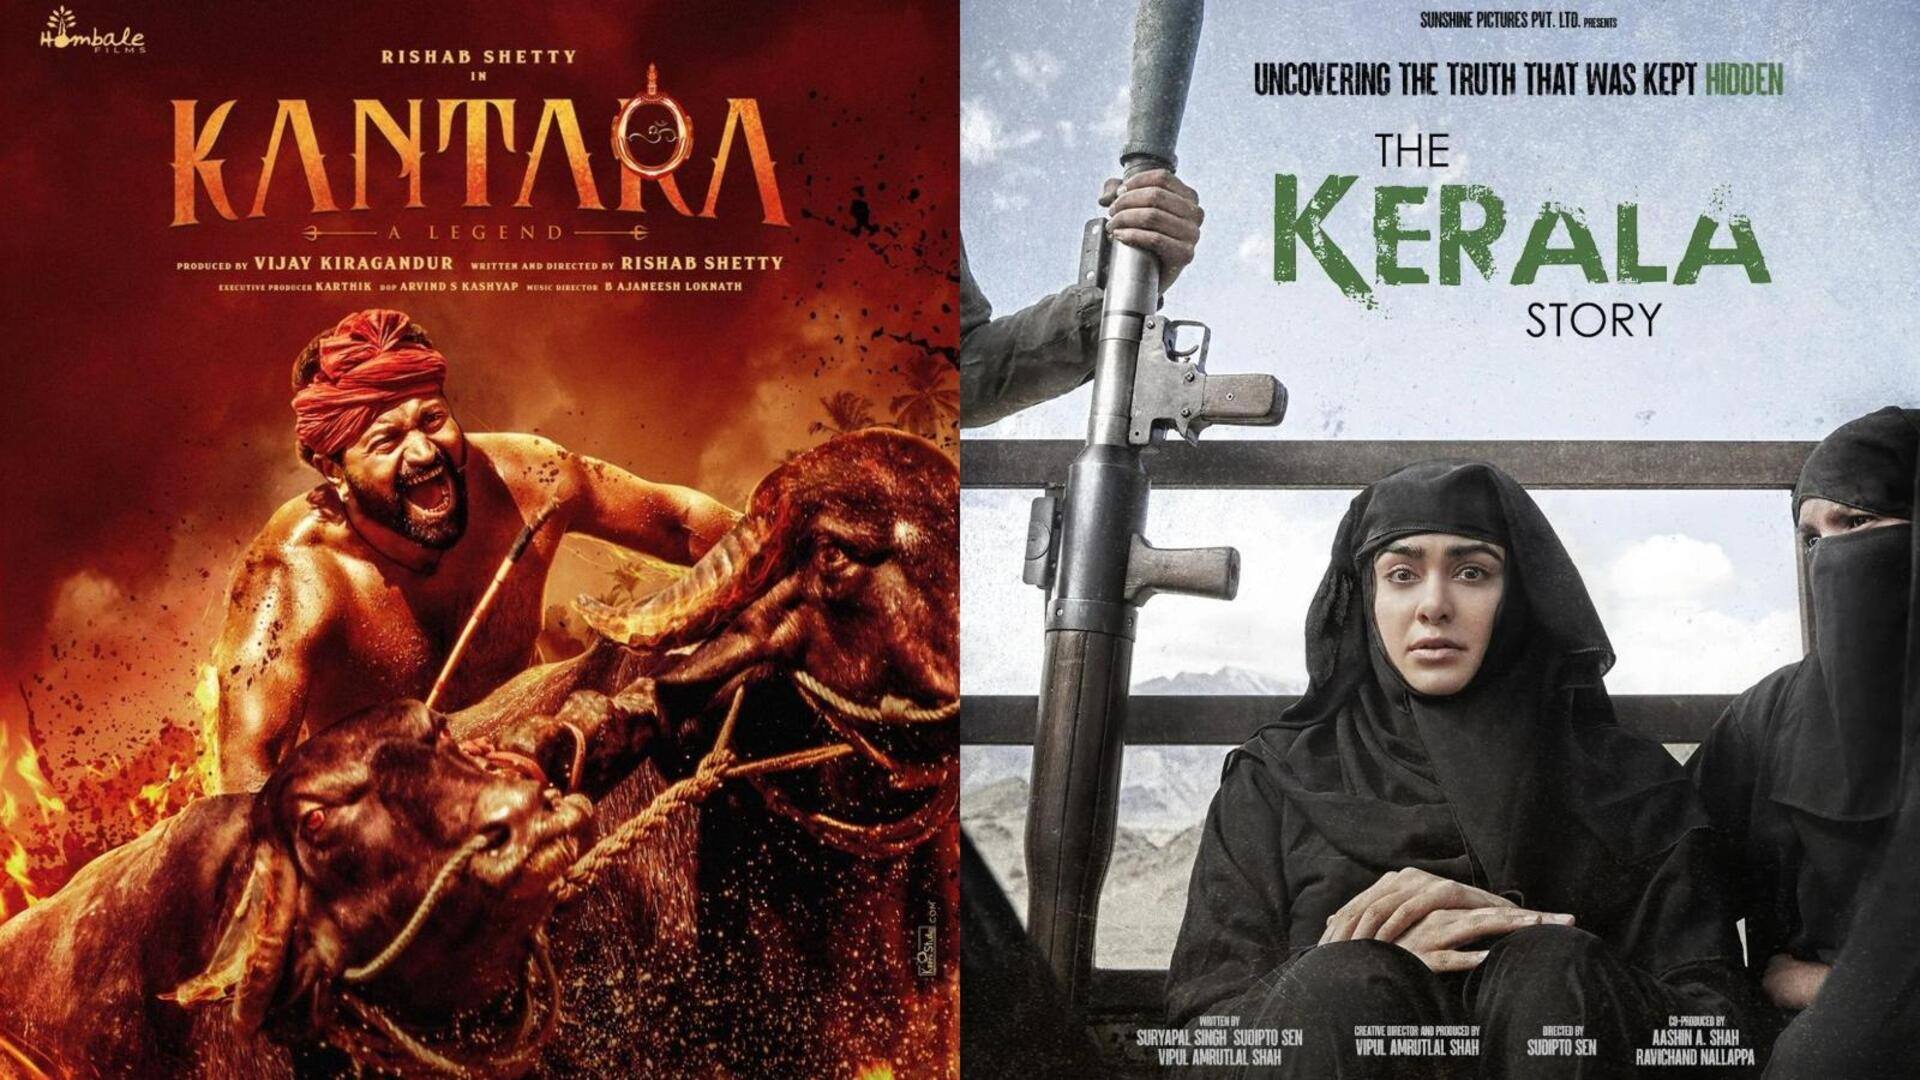 'कांतारा' से 'द केरल स्टोरी' तक, 54वें भारतीय अंतरराष्ट्रीय फिल्म महोत्सव में दिखाई जाएंगी ये फिल्में 